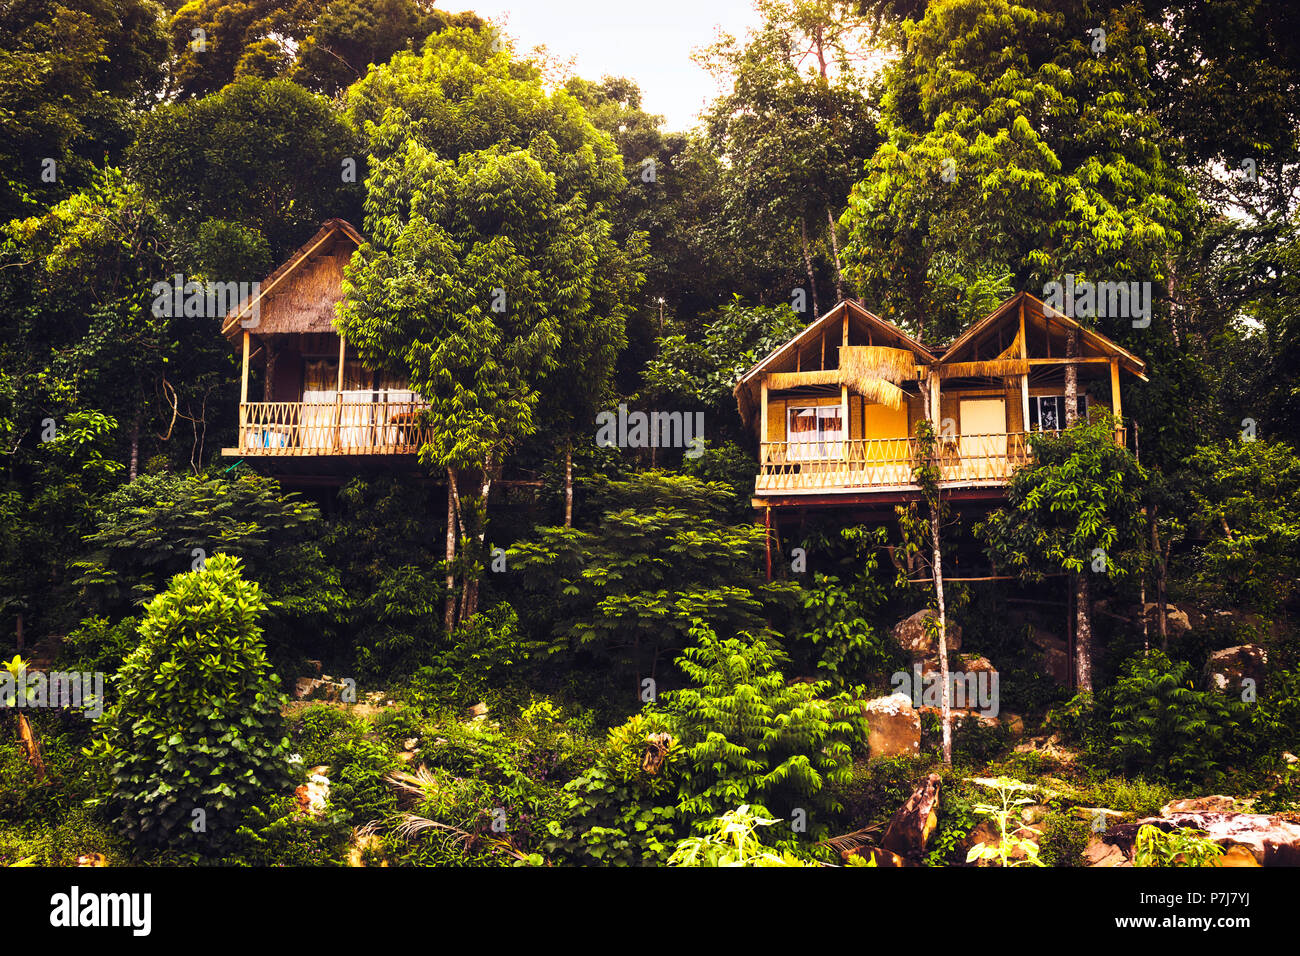 Bellissimi bungalows su un isola esotica in mezzo alla giungla. La bellezza della natura. Foto Stock